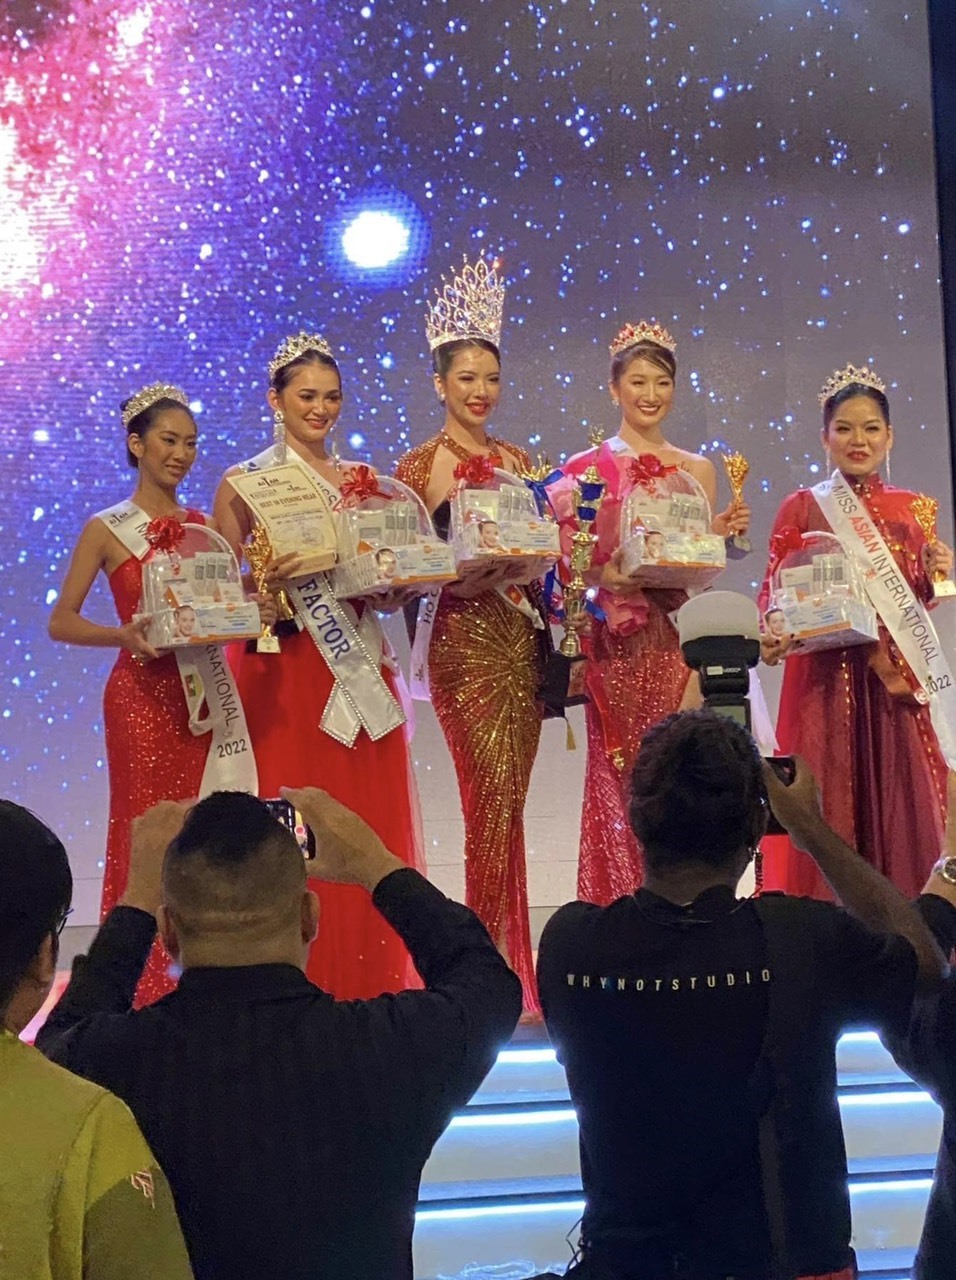 Nguyễn Thuỳ Dung – đại diện Việt Nam, 27 tuổi đã đăng quang Hoa hậu châu Á 2022 (Miss & Mister Asian International 2022) vào tối 12.12 tại Malaysia.